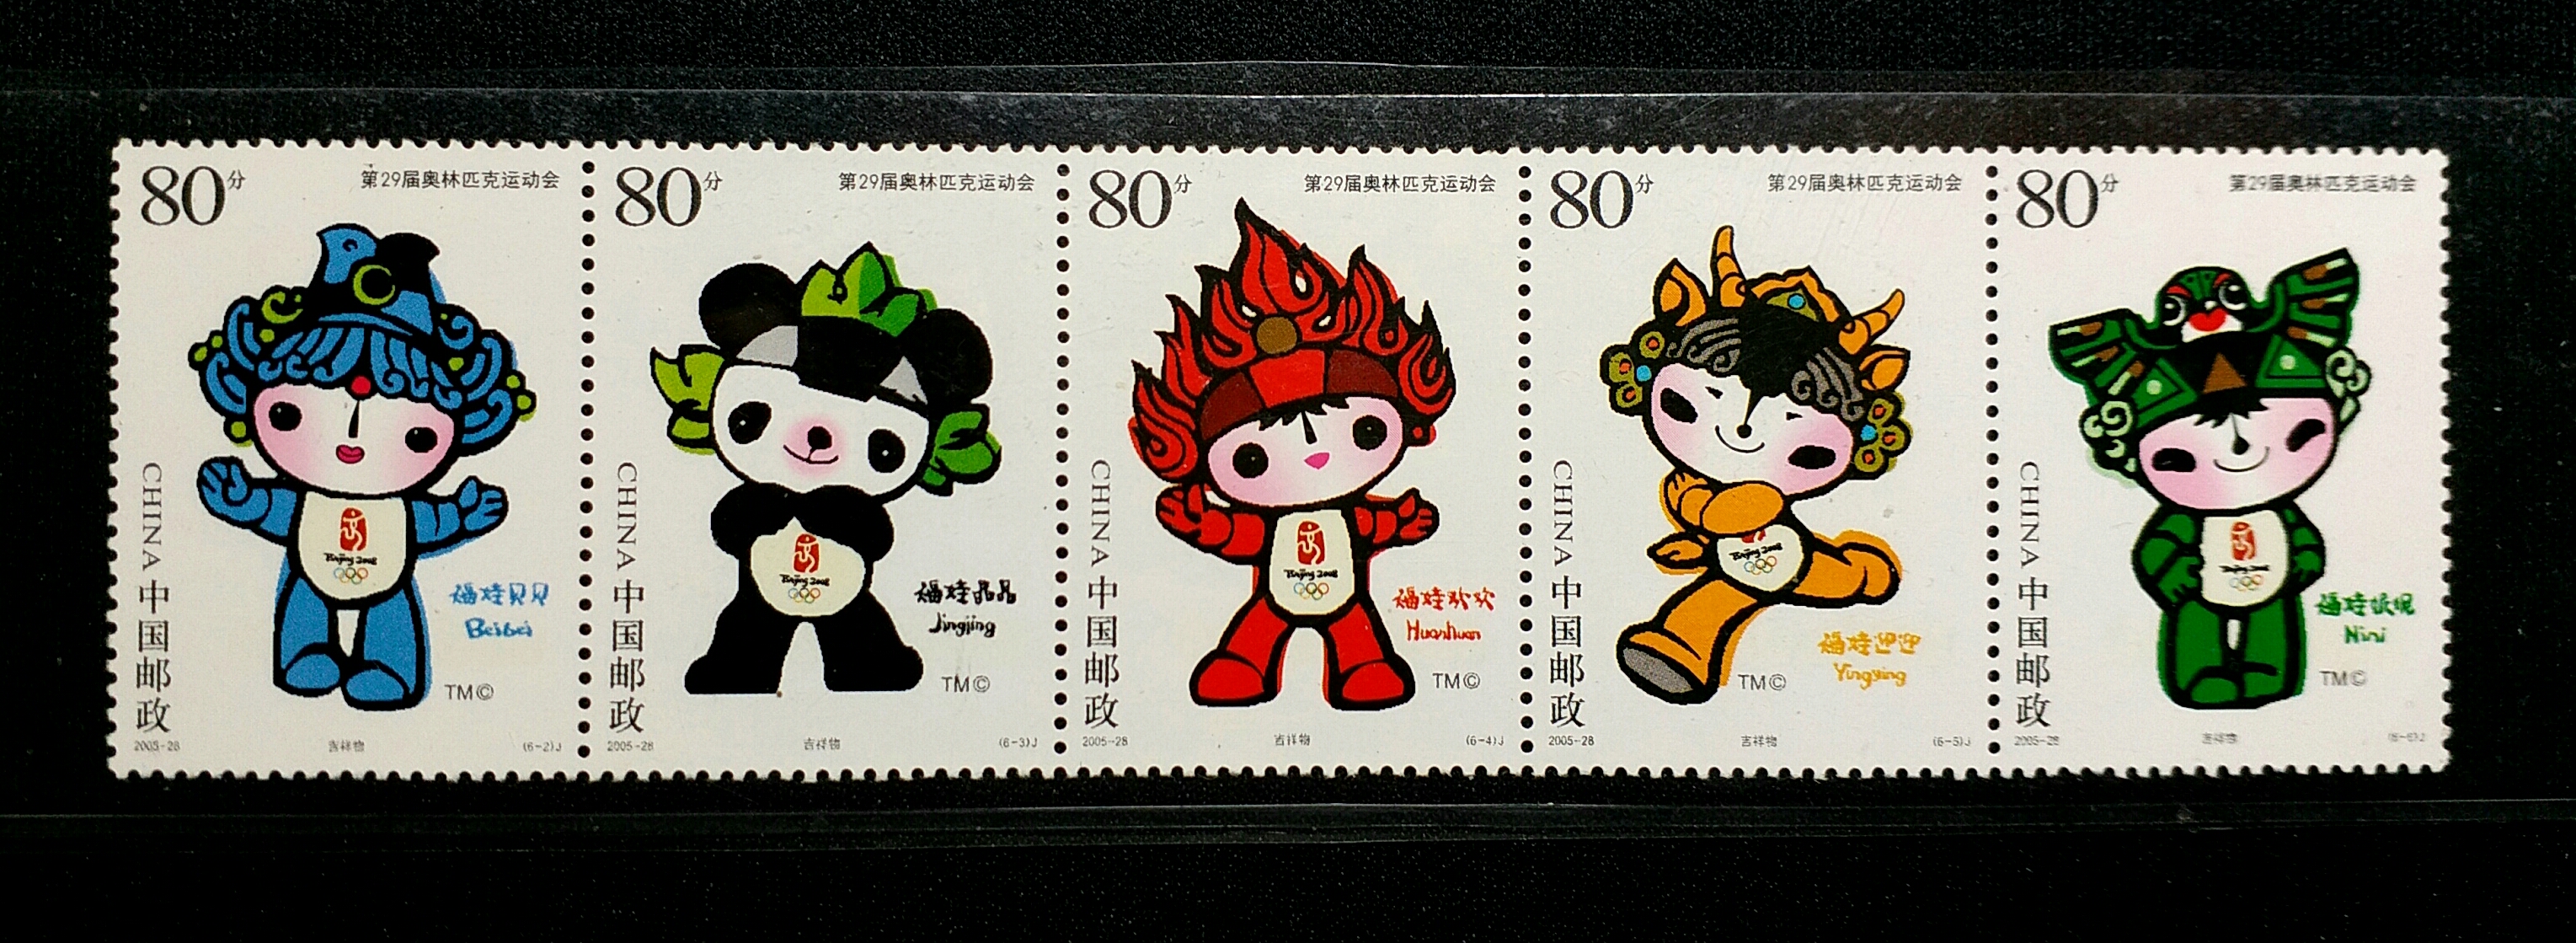 北京奥运吉祥物-五福娃邮票.品相如图,按图发货.